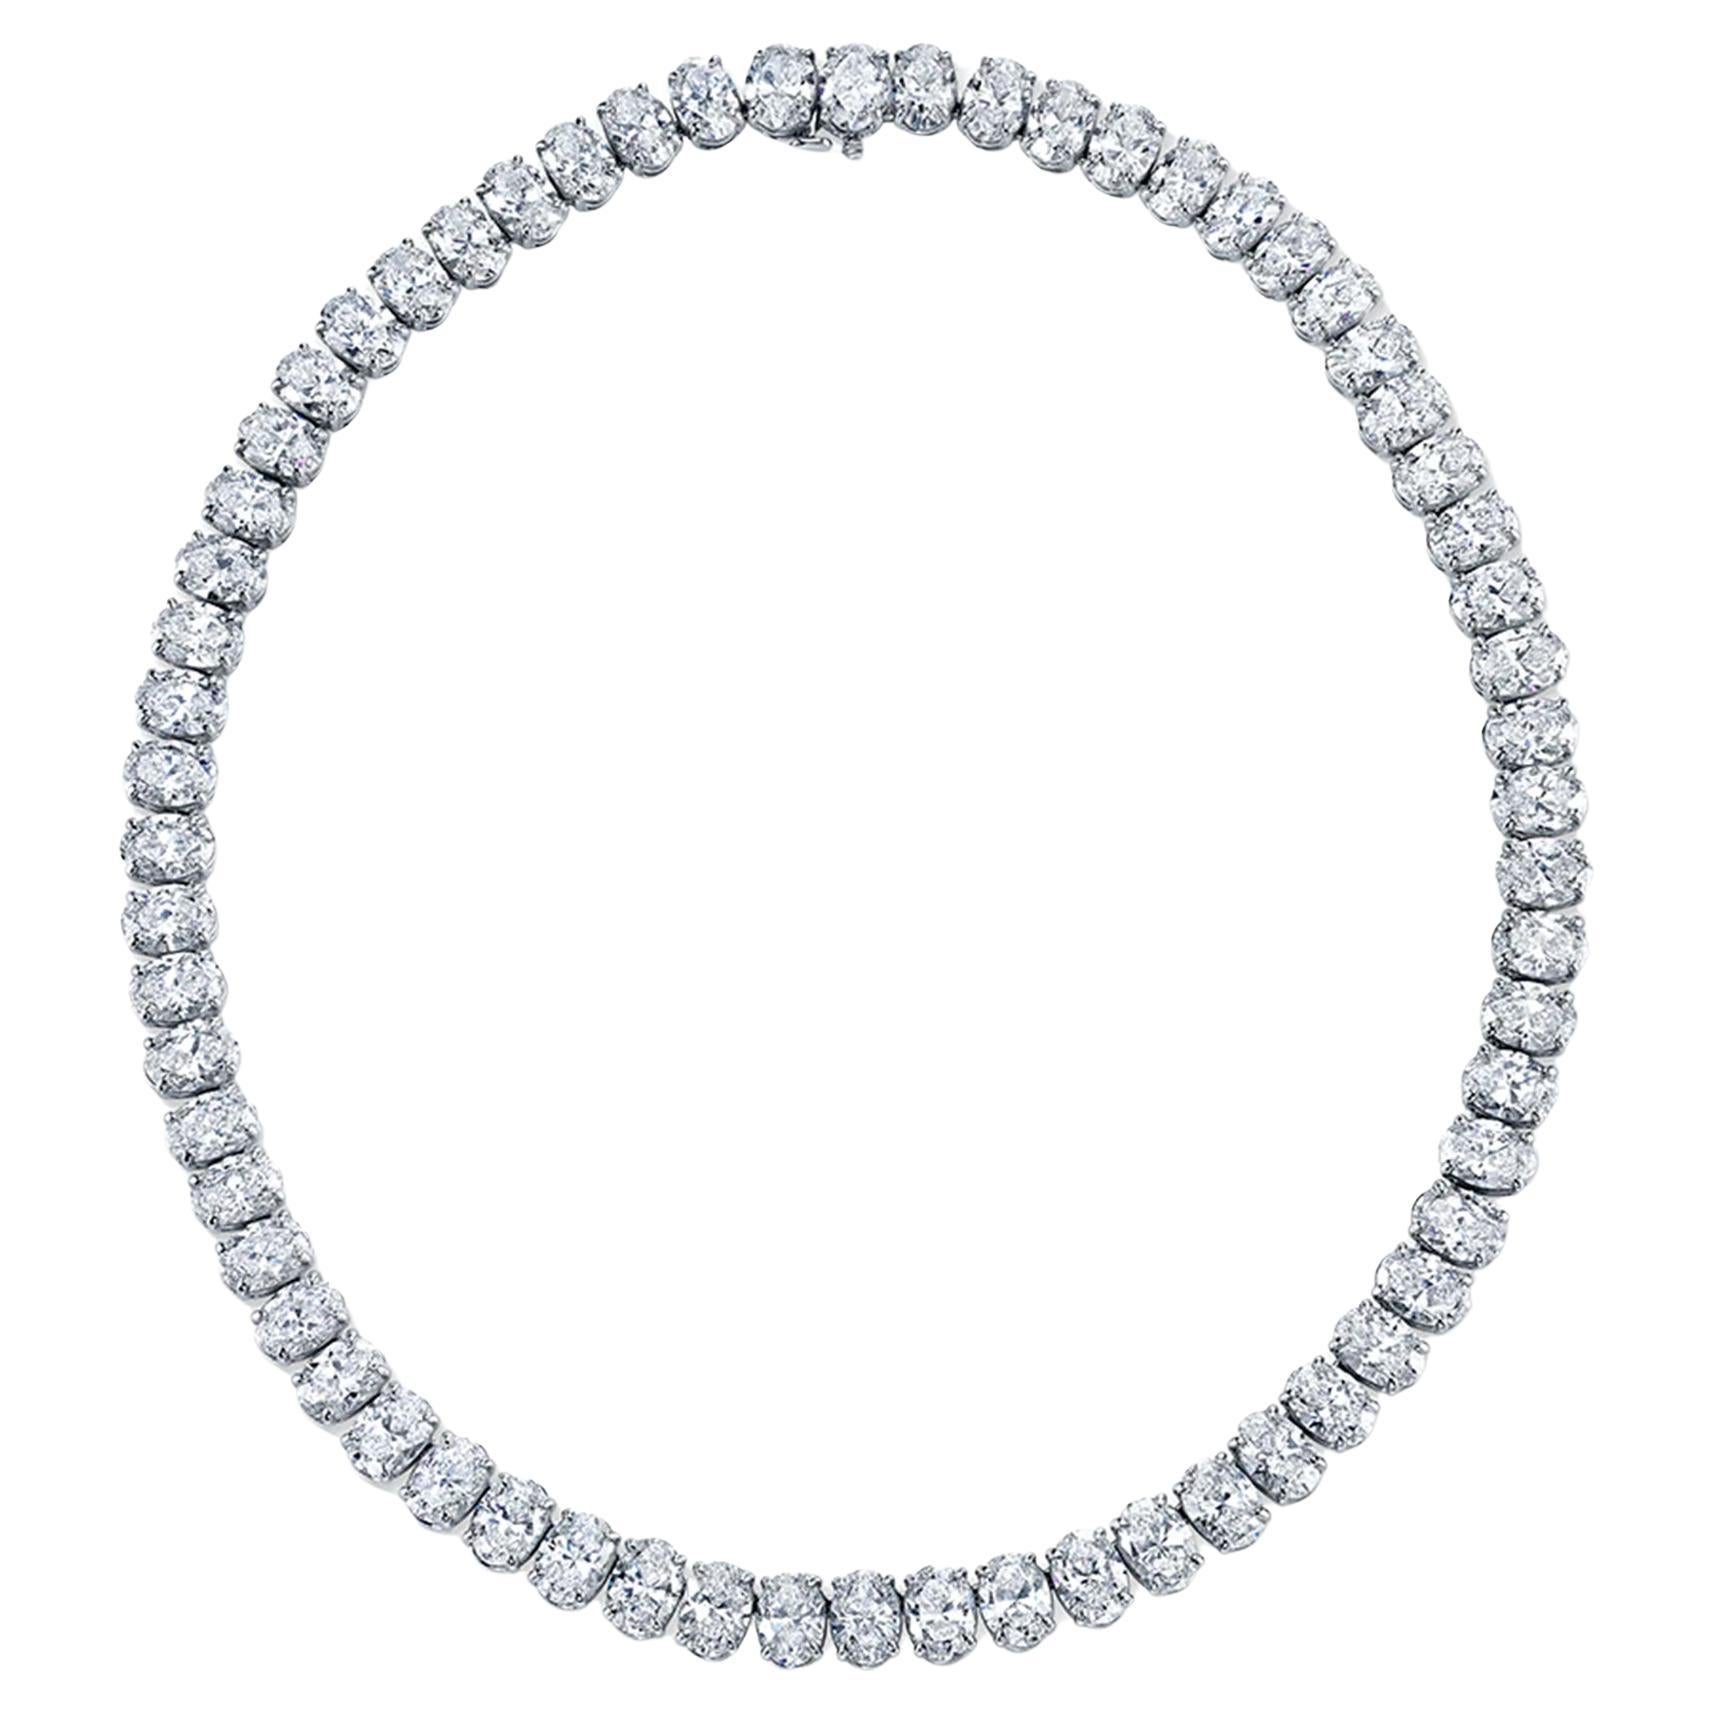 Certified 65 Carat Oval Cut Riviera Diamond Necklace